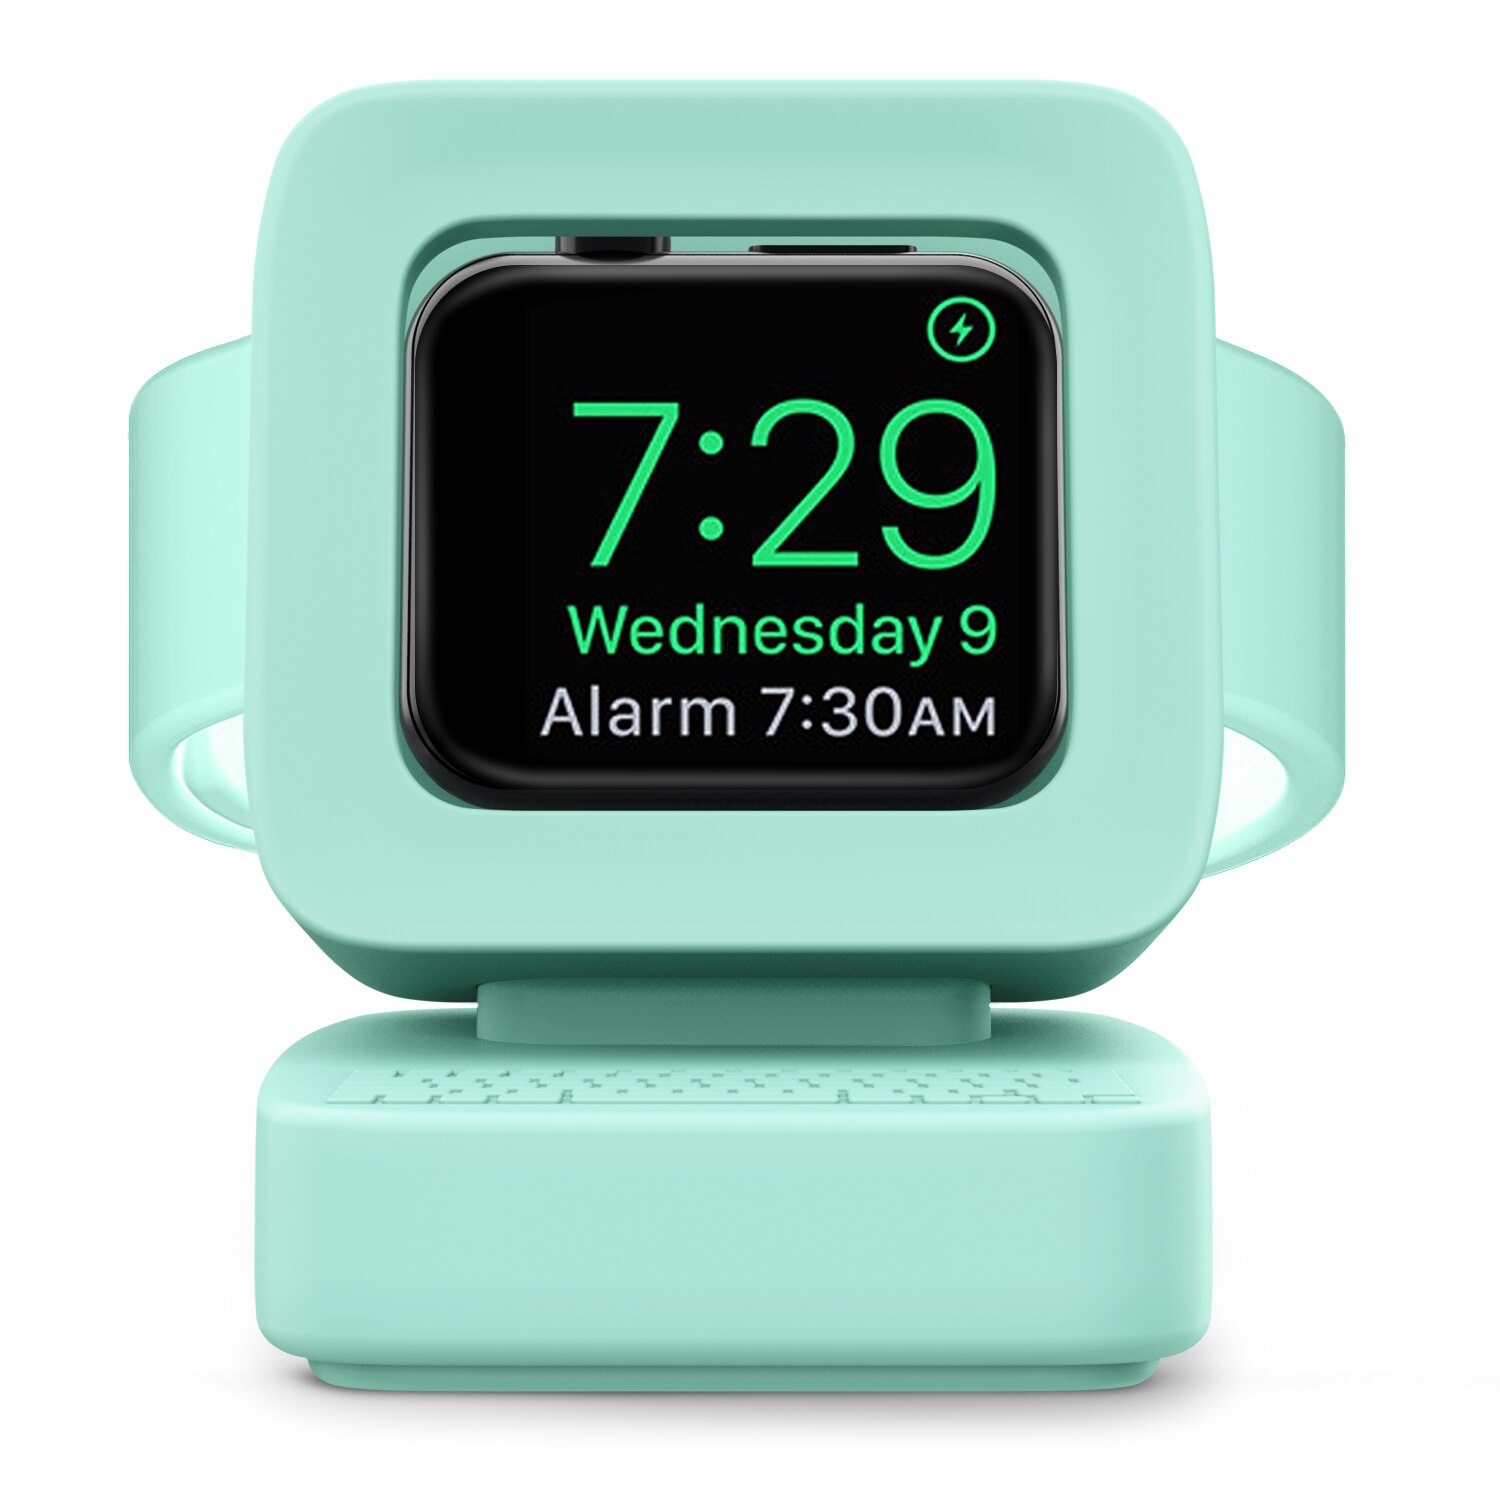 Mapuce oplader stativmonteret silikone dock holder til apple watch serie 3/2/1 opladerkabel til apple iwatch serie 42mm/38mm: Grøn